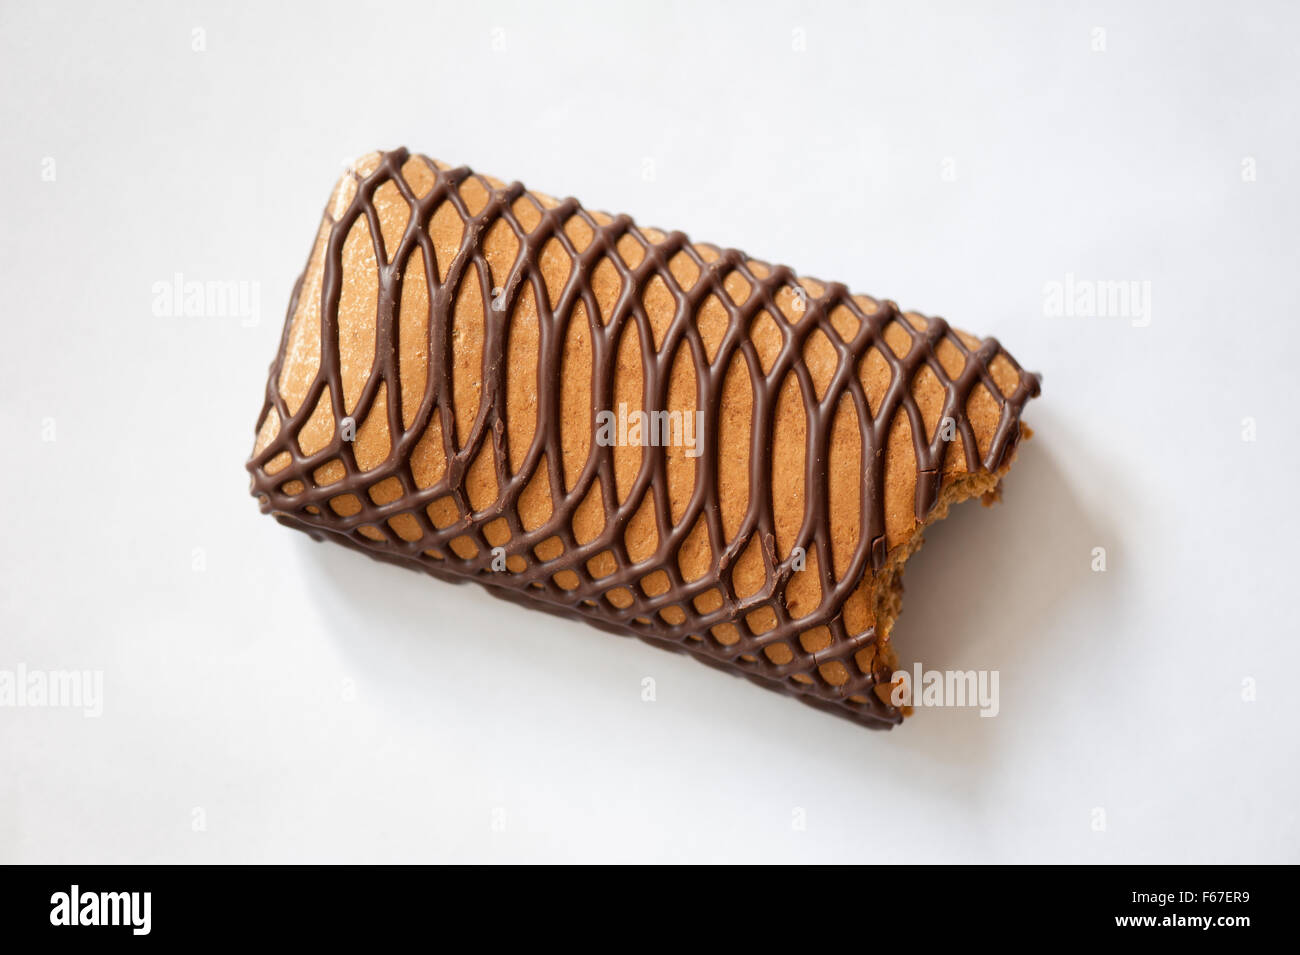 Morso di panpepato dolce snack bar decorato con cioccolato, caramelle dolci con motivo decorativo latte glassa di cioccolato ... Foto Stock